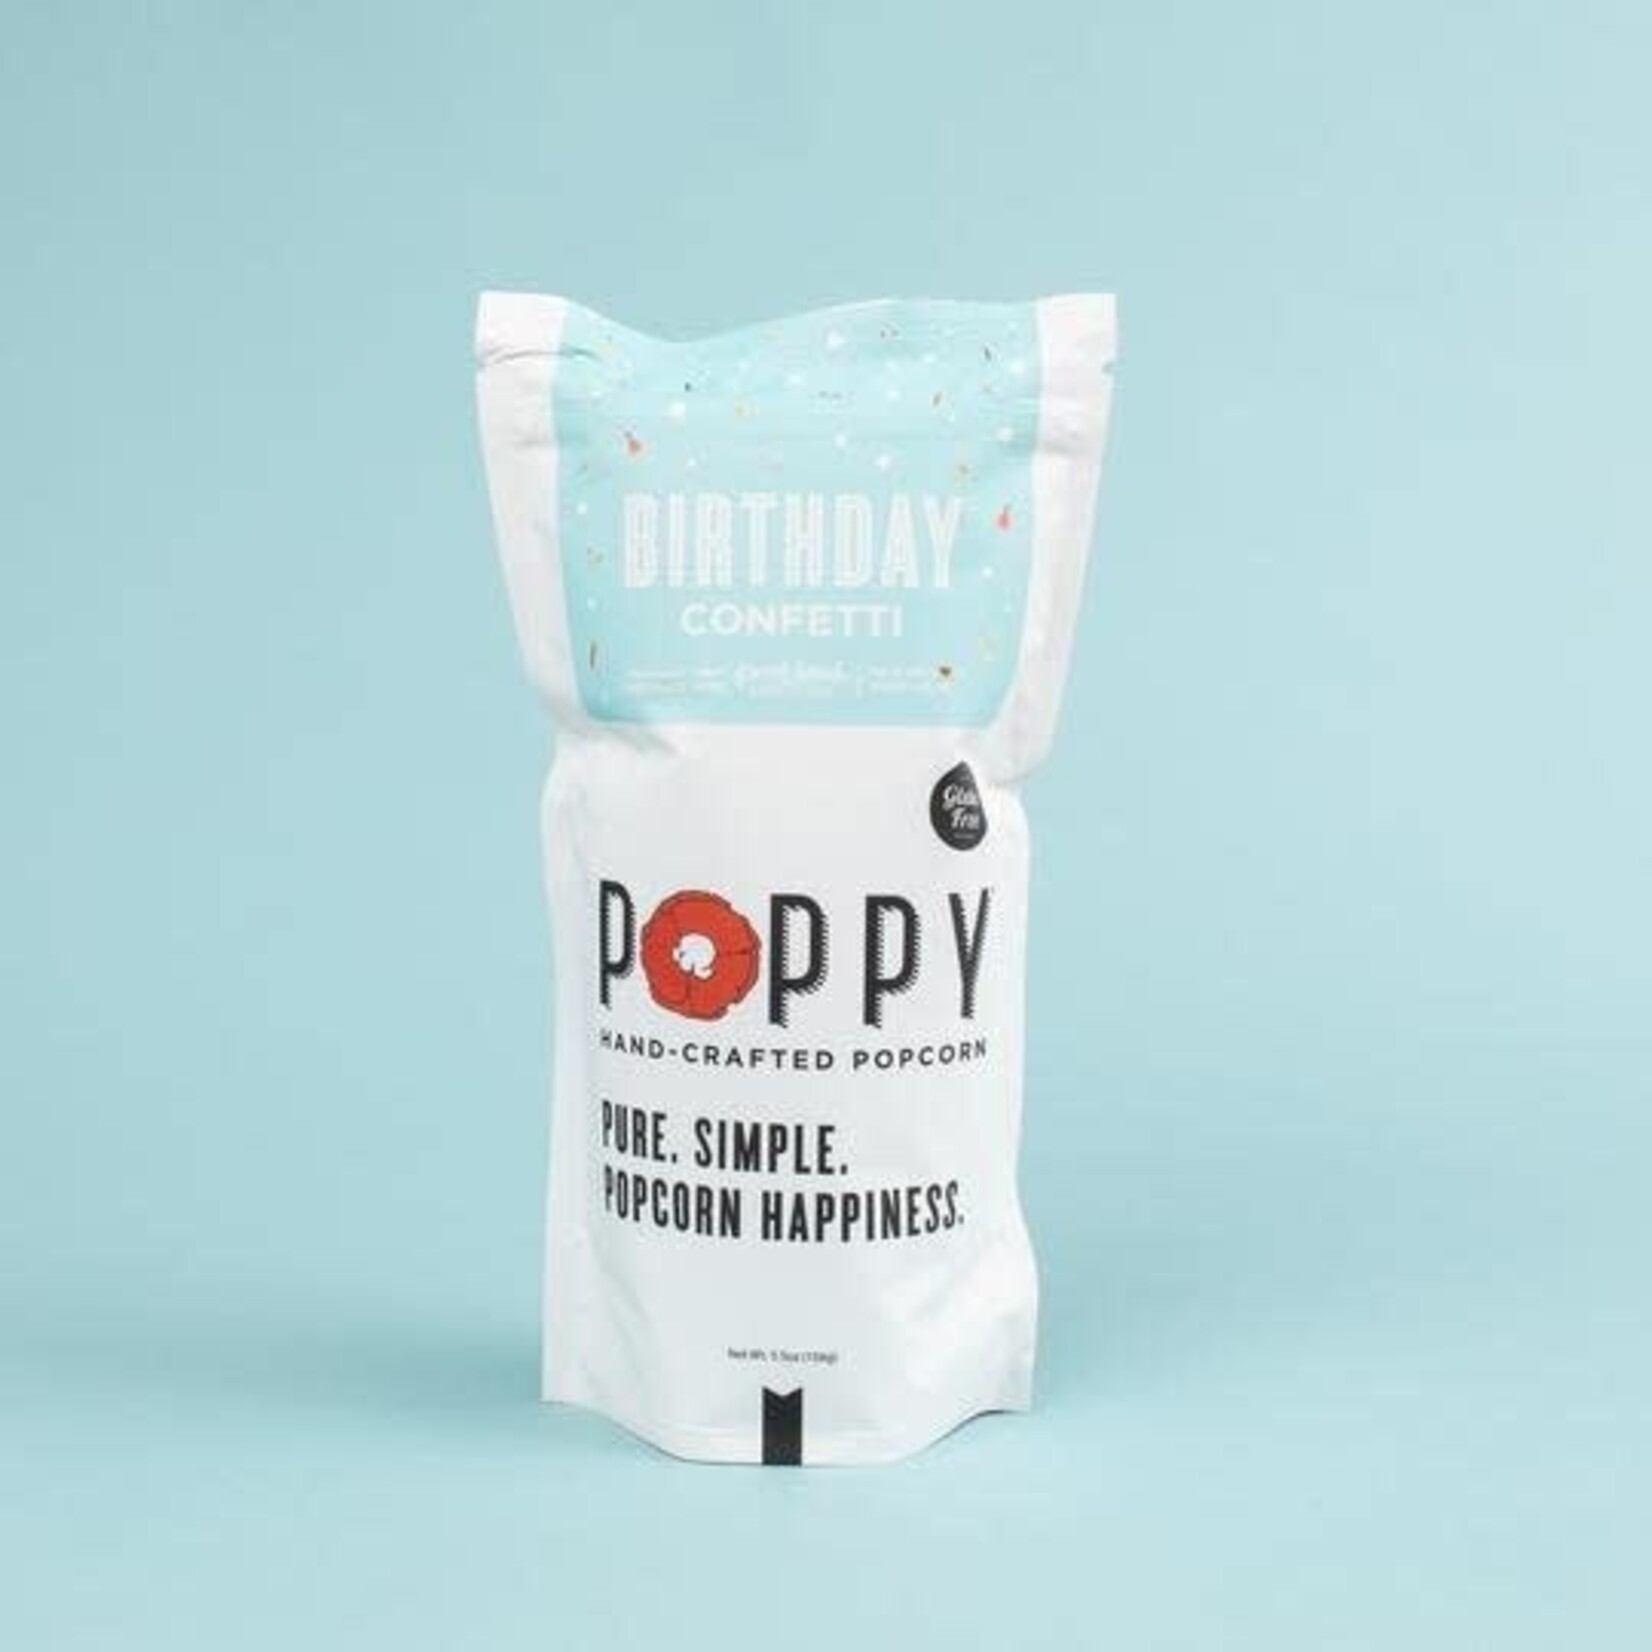 Poppy Handcrafted Popcorn Popcorn Birthday Confetti